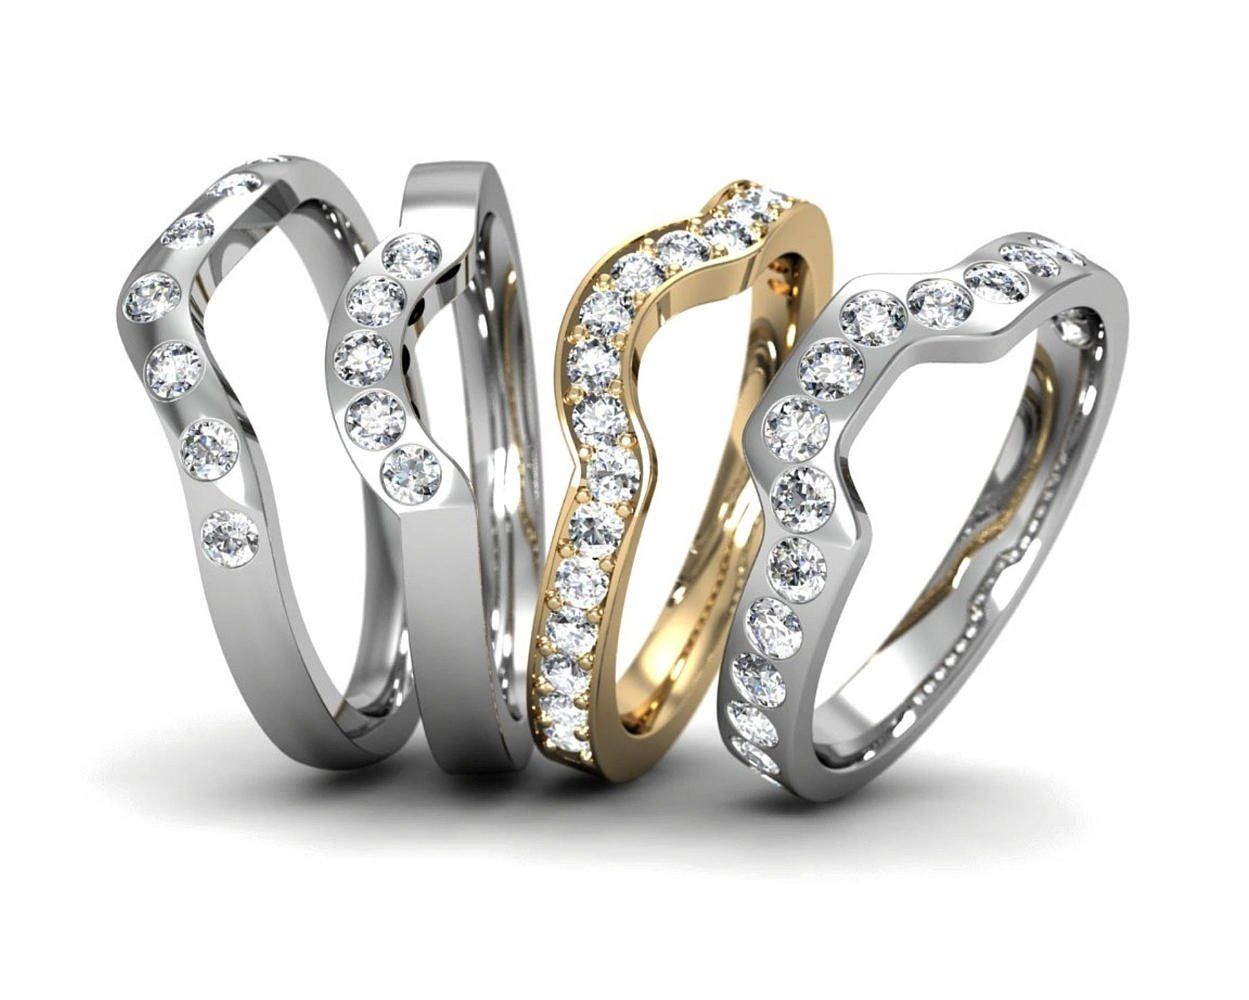 Bespoke wedding rings